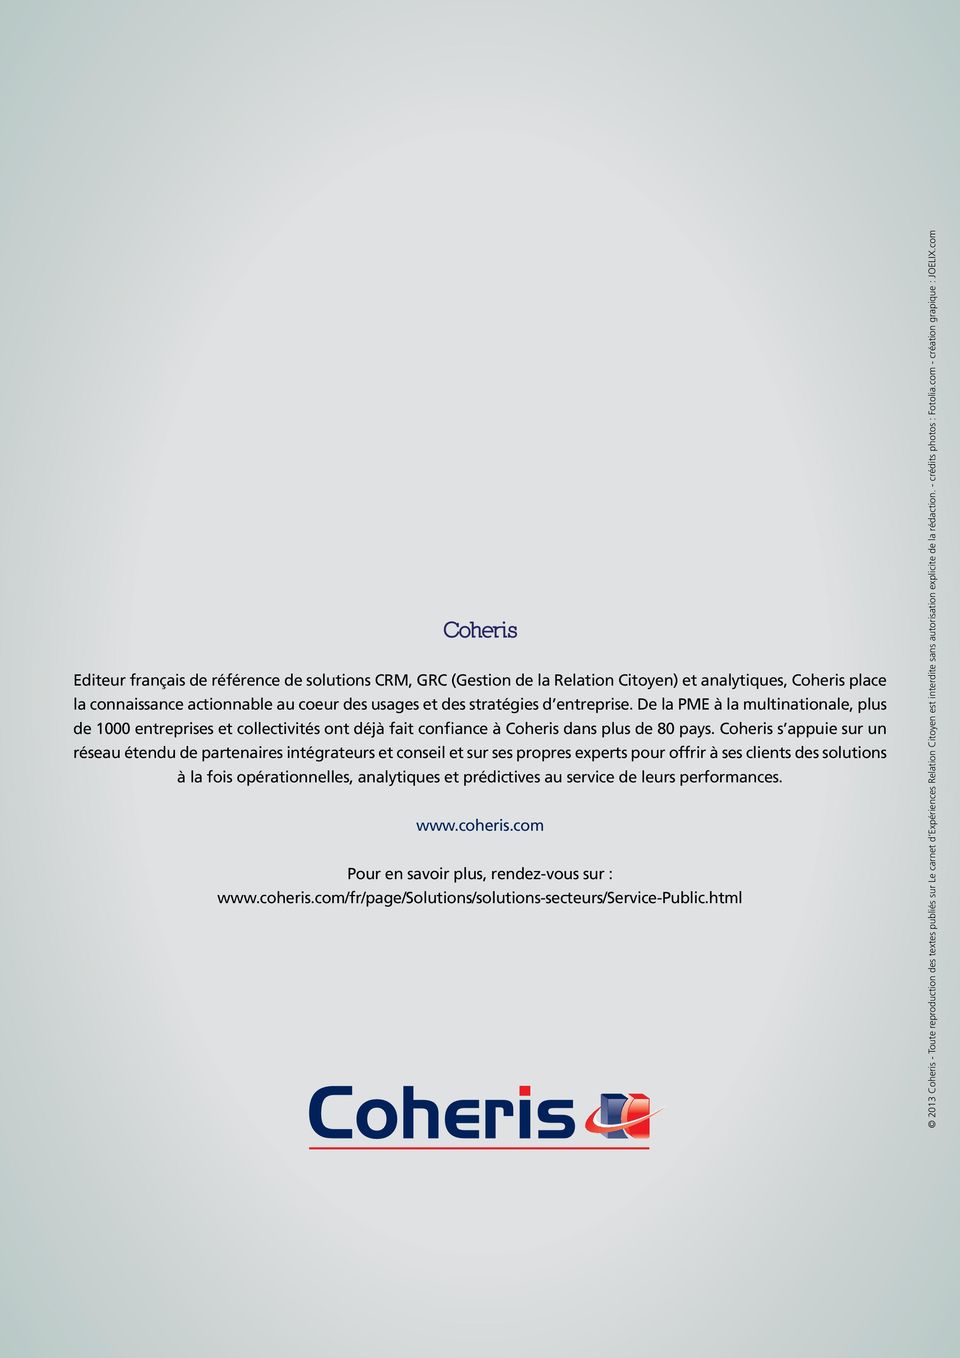 Coheris s appuie sur un réseau étendu de partenaires intégrateurs et conseil et sur ses propres experts pour offrir à ses clients des solutions à la fois opérationnelles, analytiques et prédictives